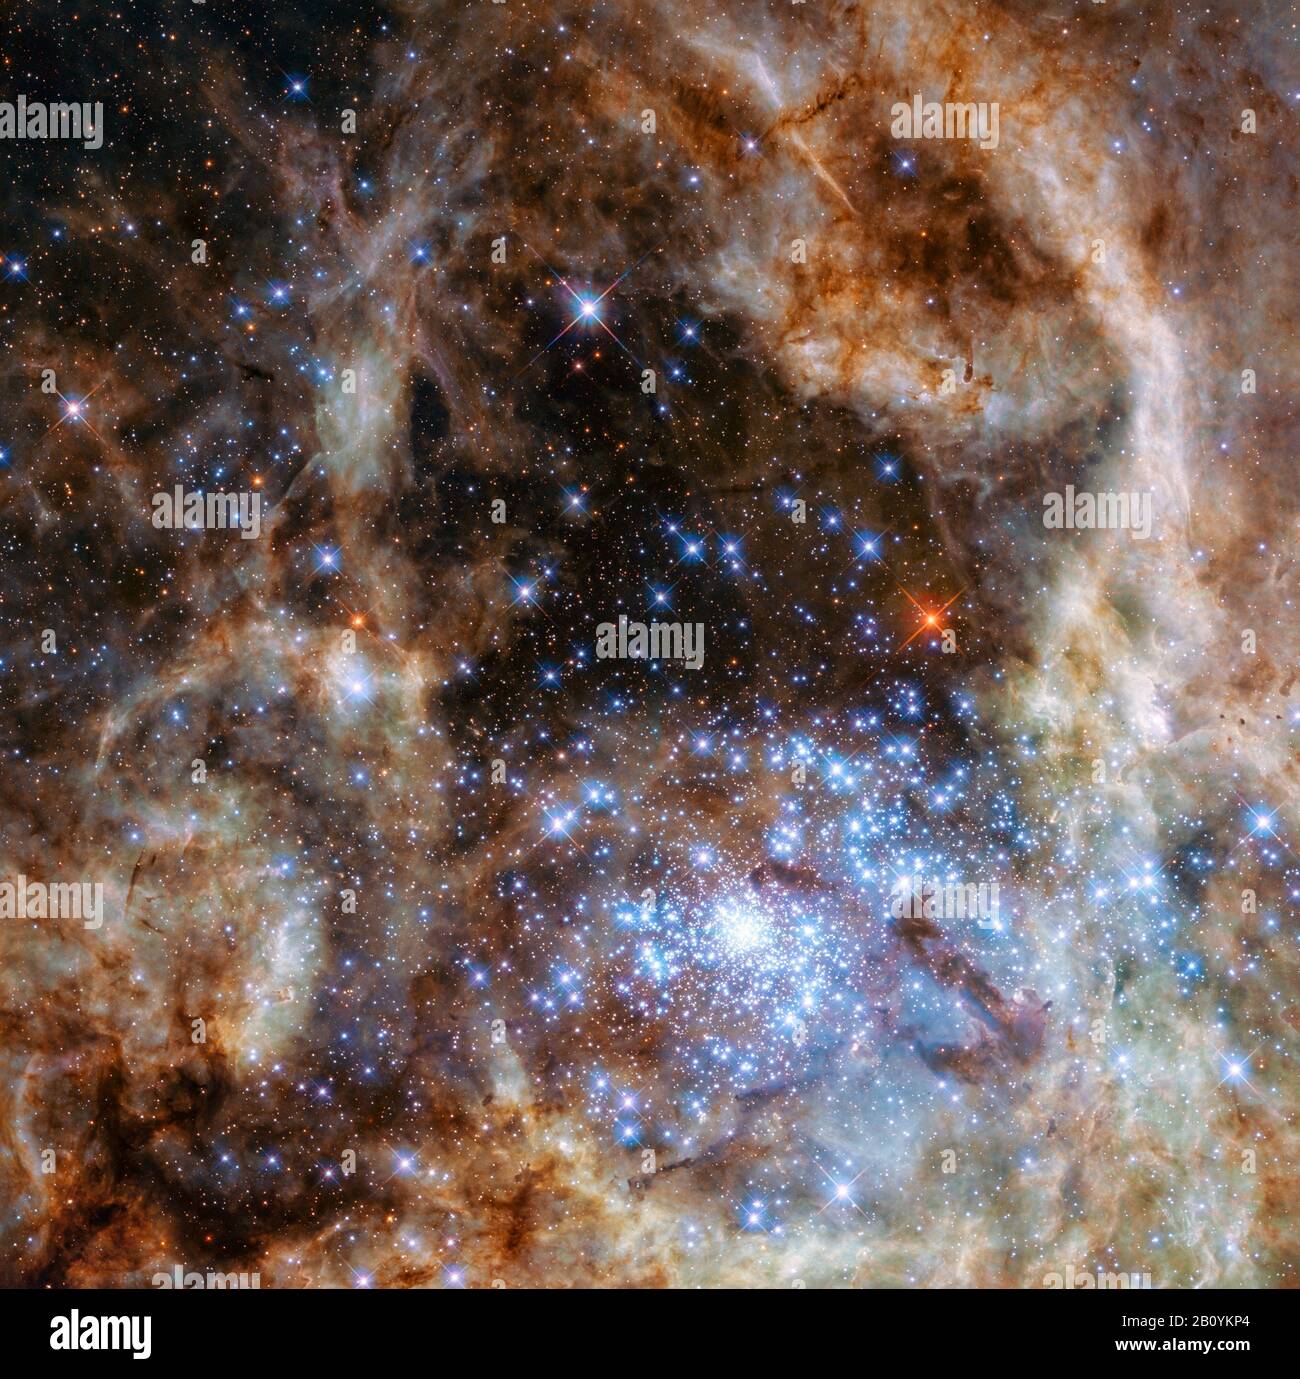 Tthe région centrale de la nébuleuse Tarantila dans le grand nuage Magellanique. Le jeune groupe d'étoiles denses R136 peut être vu dans le coin inférieur droit. Banque D'Images